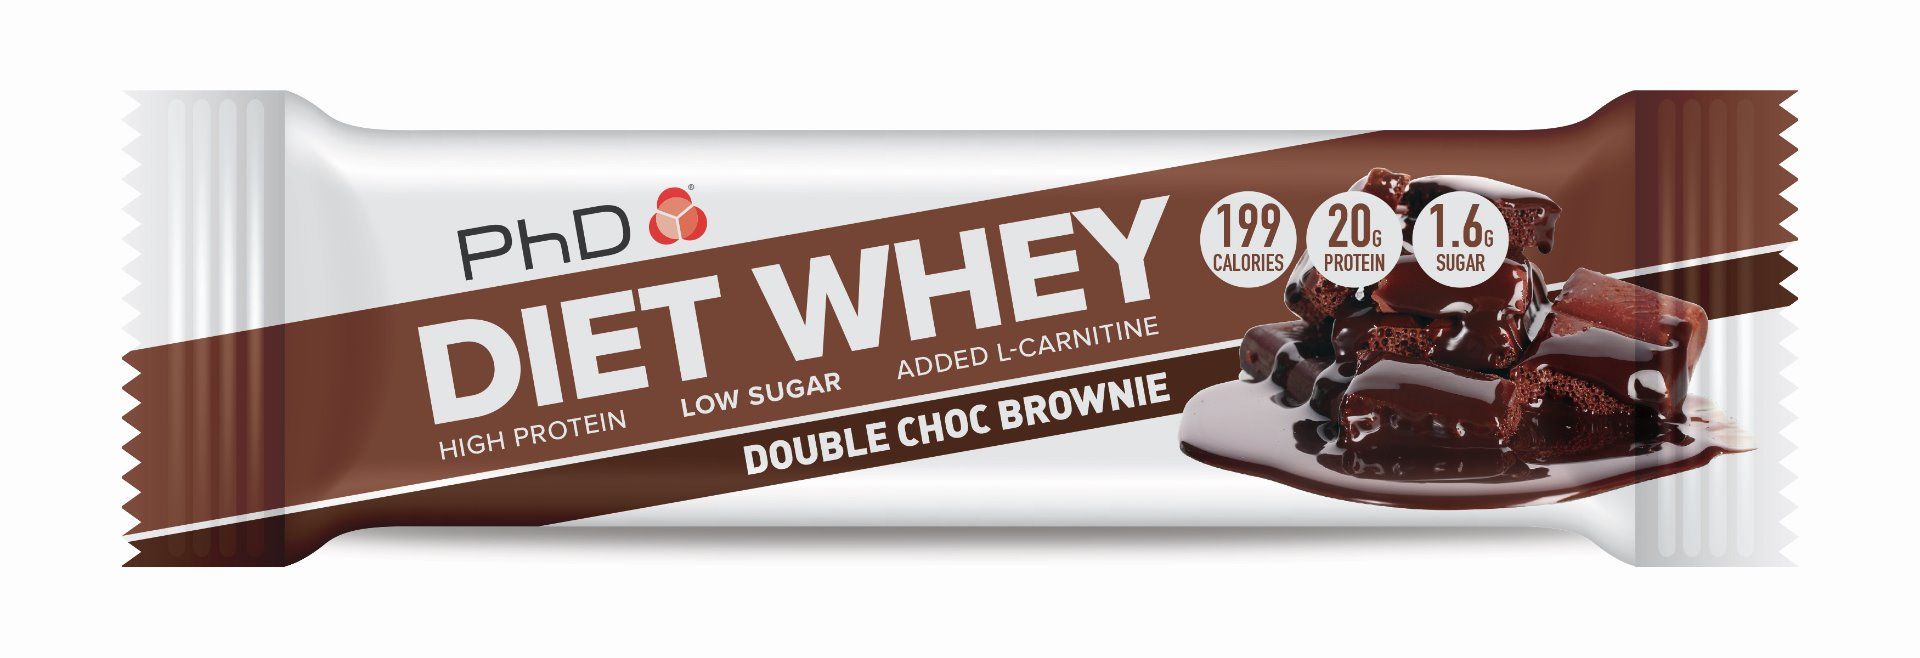 PhD Diet Whey Bar, диетический протеиновый батончик, вкус Двойной Шоколад Брауни, 65 гр.